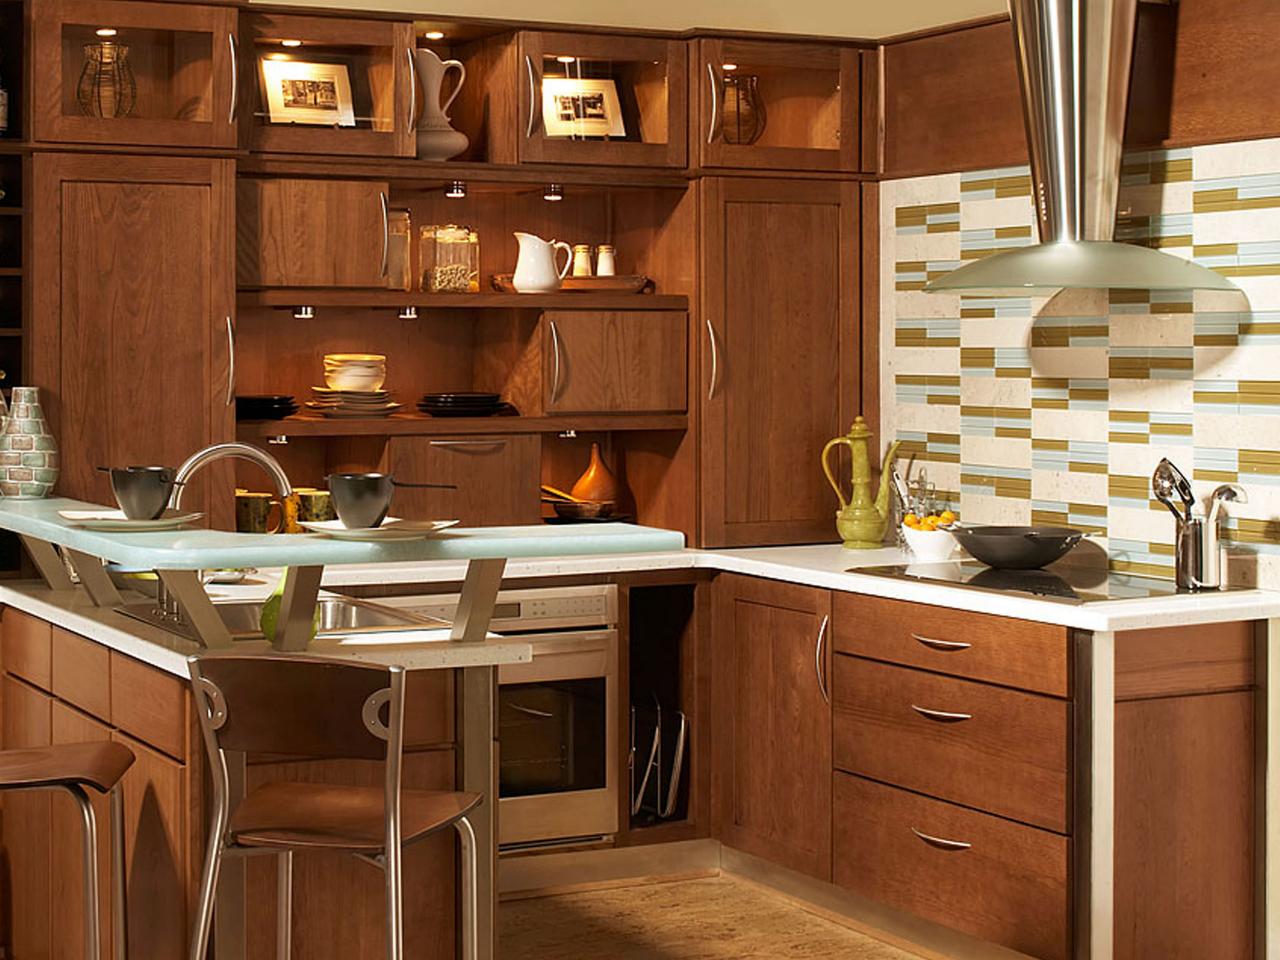 CI-Wellborn-Cabinet_kitchen-backsplash-green-aqua_s4x3.jpg.rend.hgtvcom.1280.960.jpeg